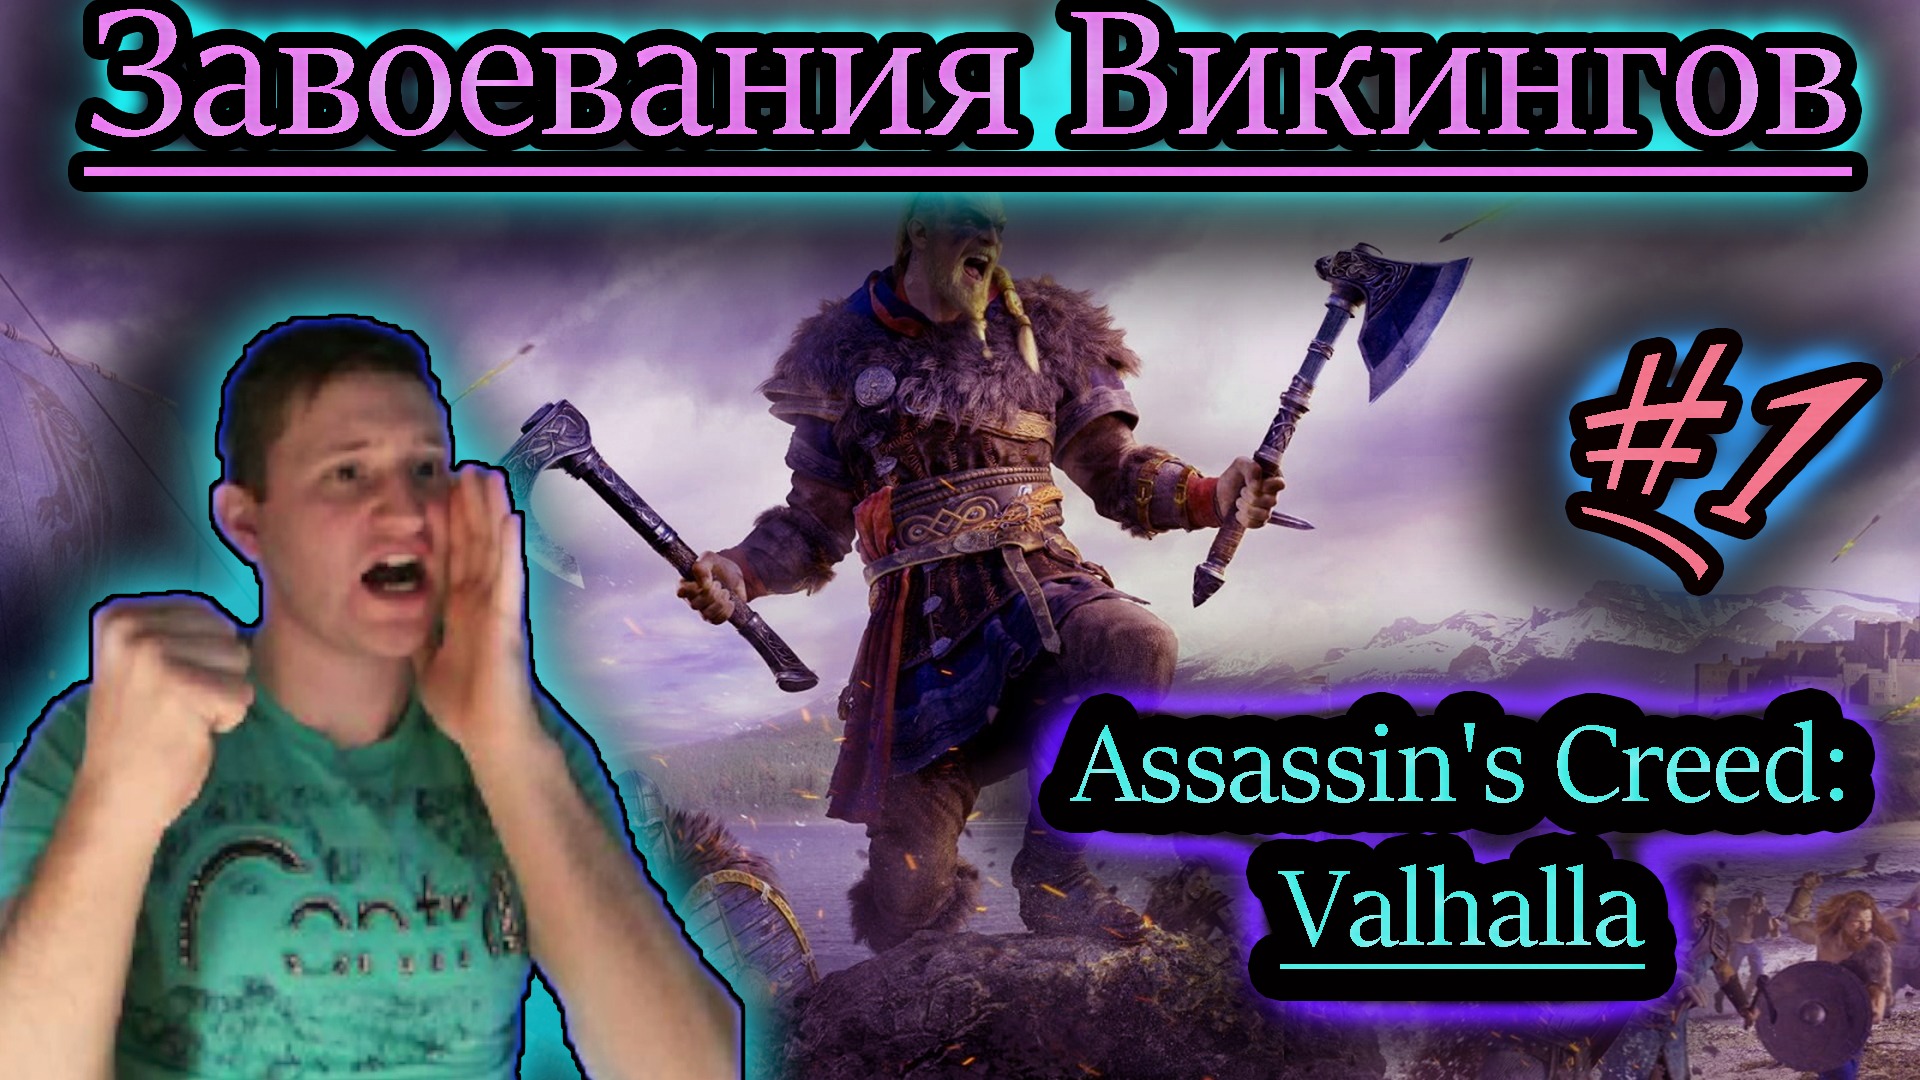 ЗАВОЕВАНИЯ ВИКИНГОВ ✔ Assassin's Creed: Valhalla #1